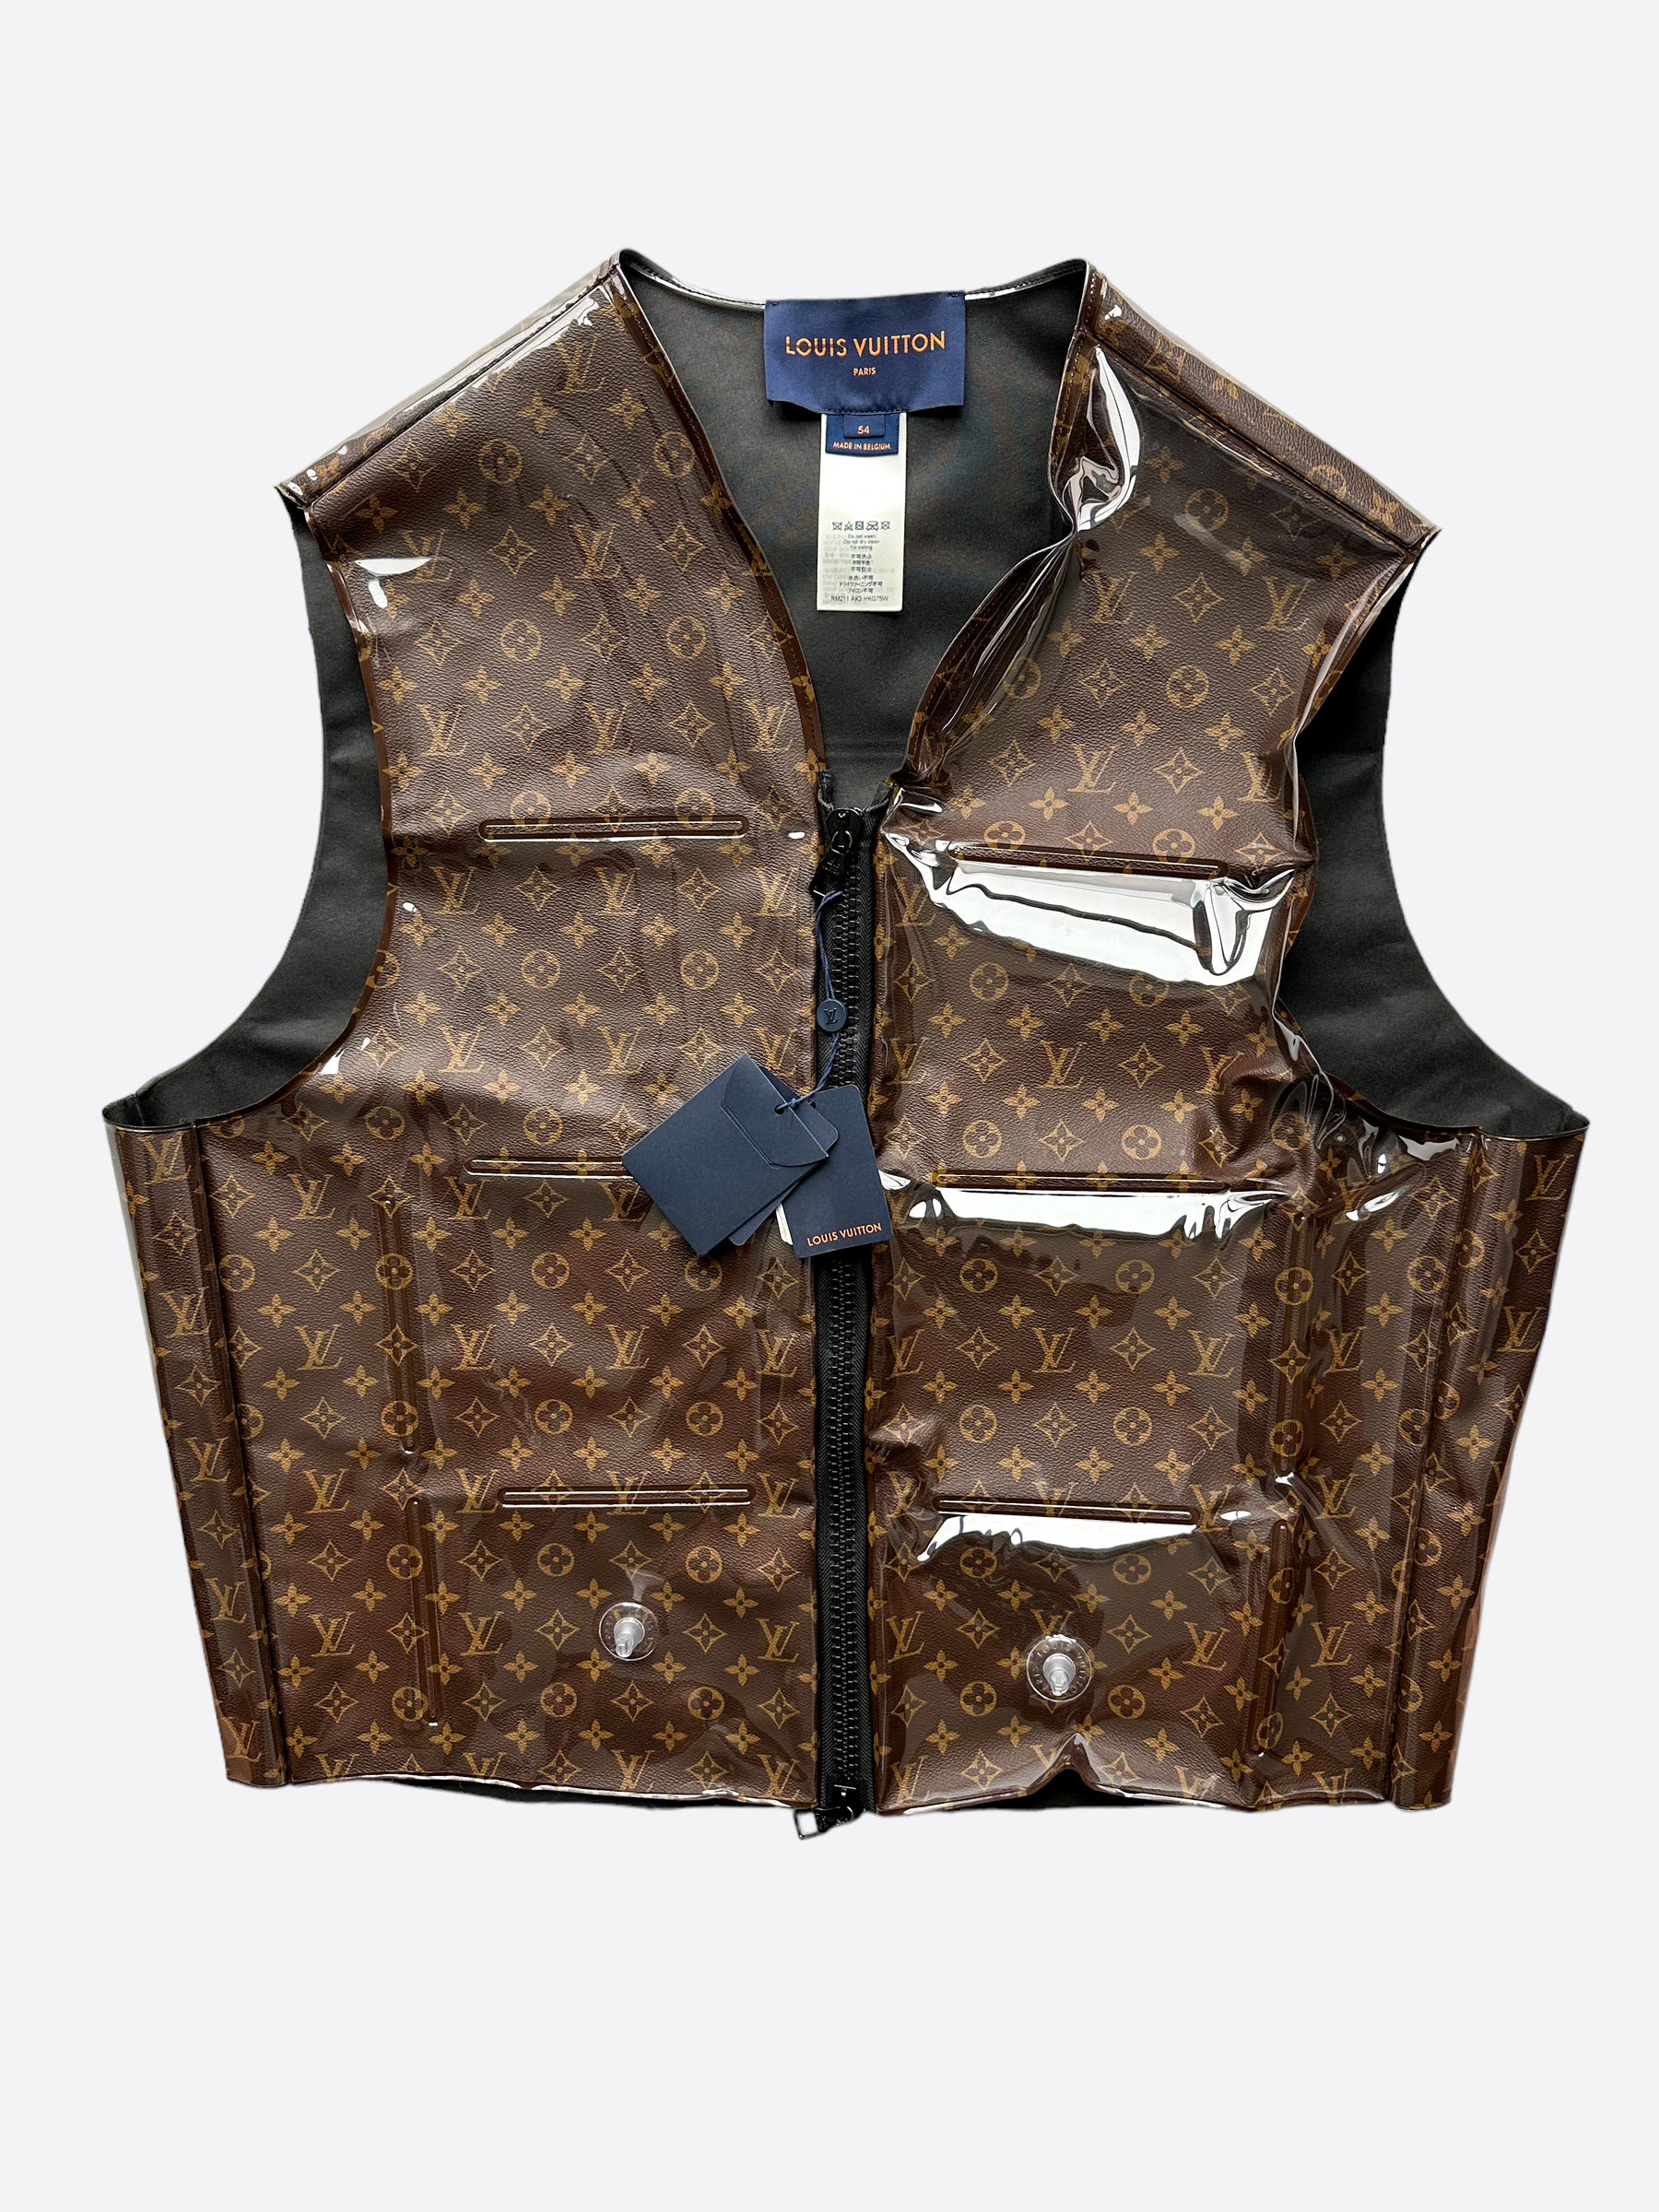 Louis Vuitton Inflatable Vest?! #fyp #louisvuitton #louisvuittonbag #f